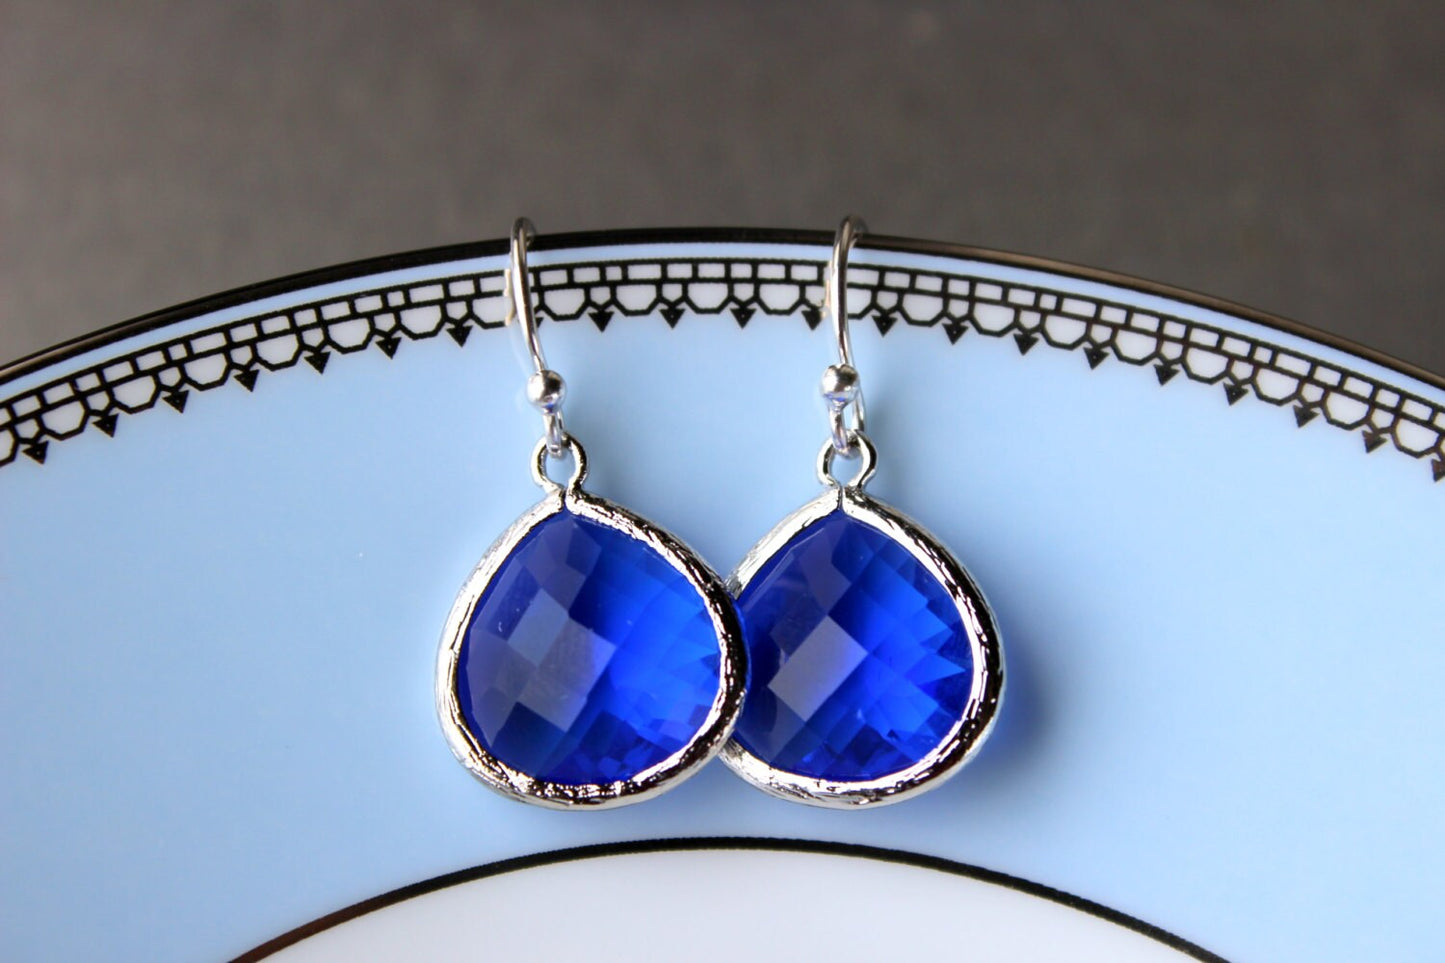 Blue Cobalt Earrings Silver Large Pendant - Sterling Silver Earwires - Wedding Earrings - Bridal Earrings - Bridesmaid Earrings